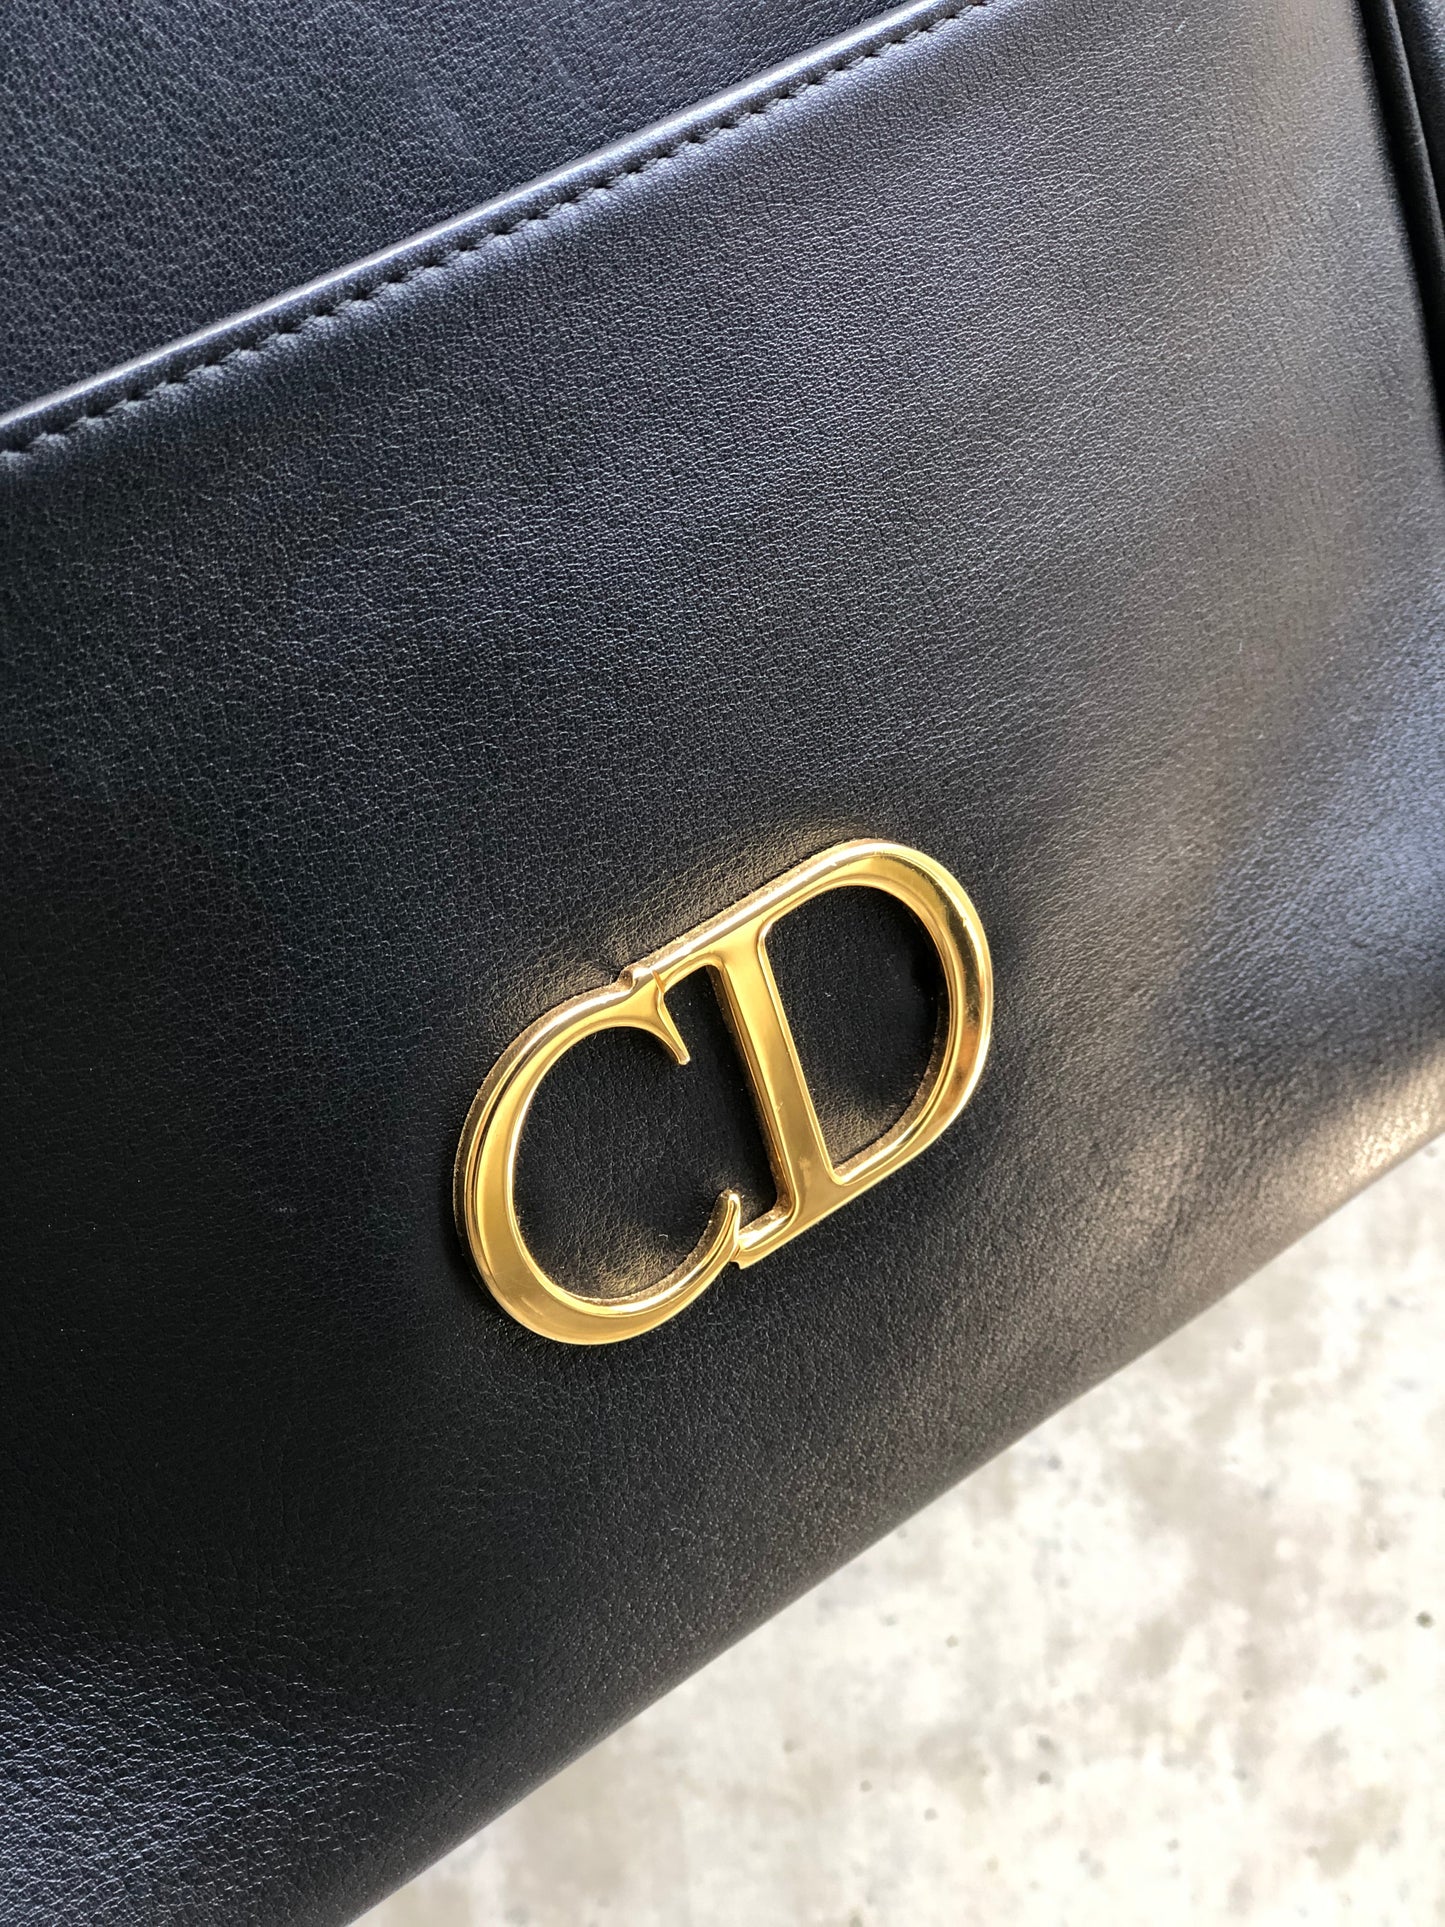 Christian Dior CD logo Leather Totebag Shoulderbag Black Vintage x3b2j4